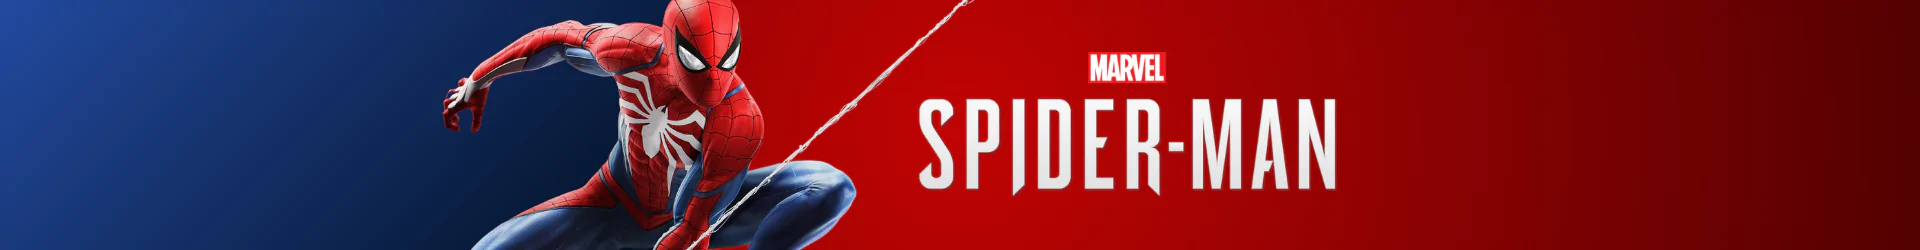 Spider-Man figures banner